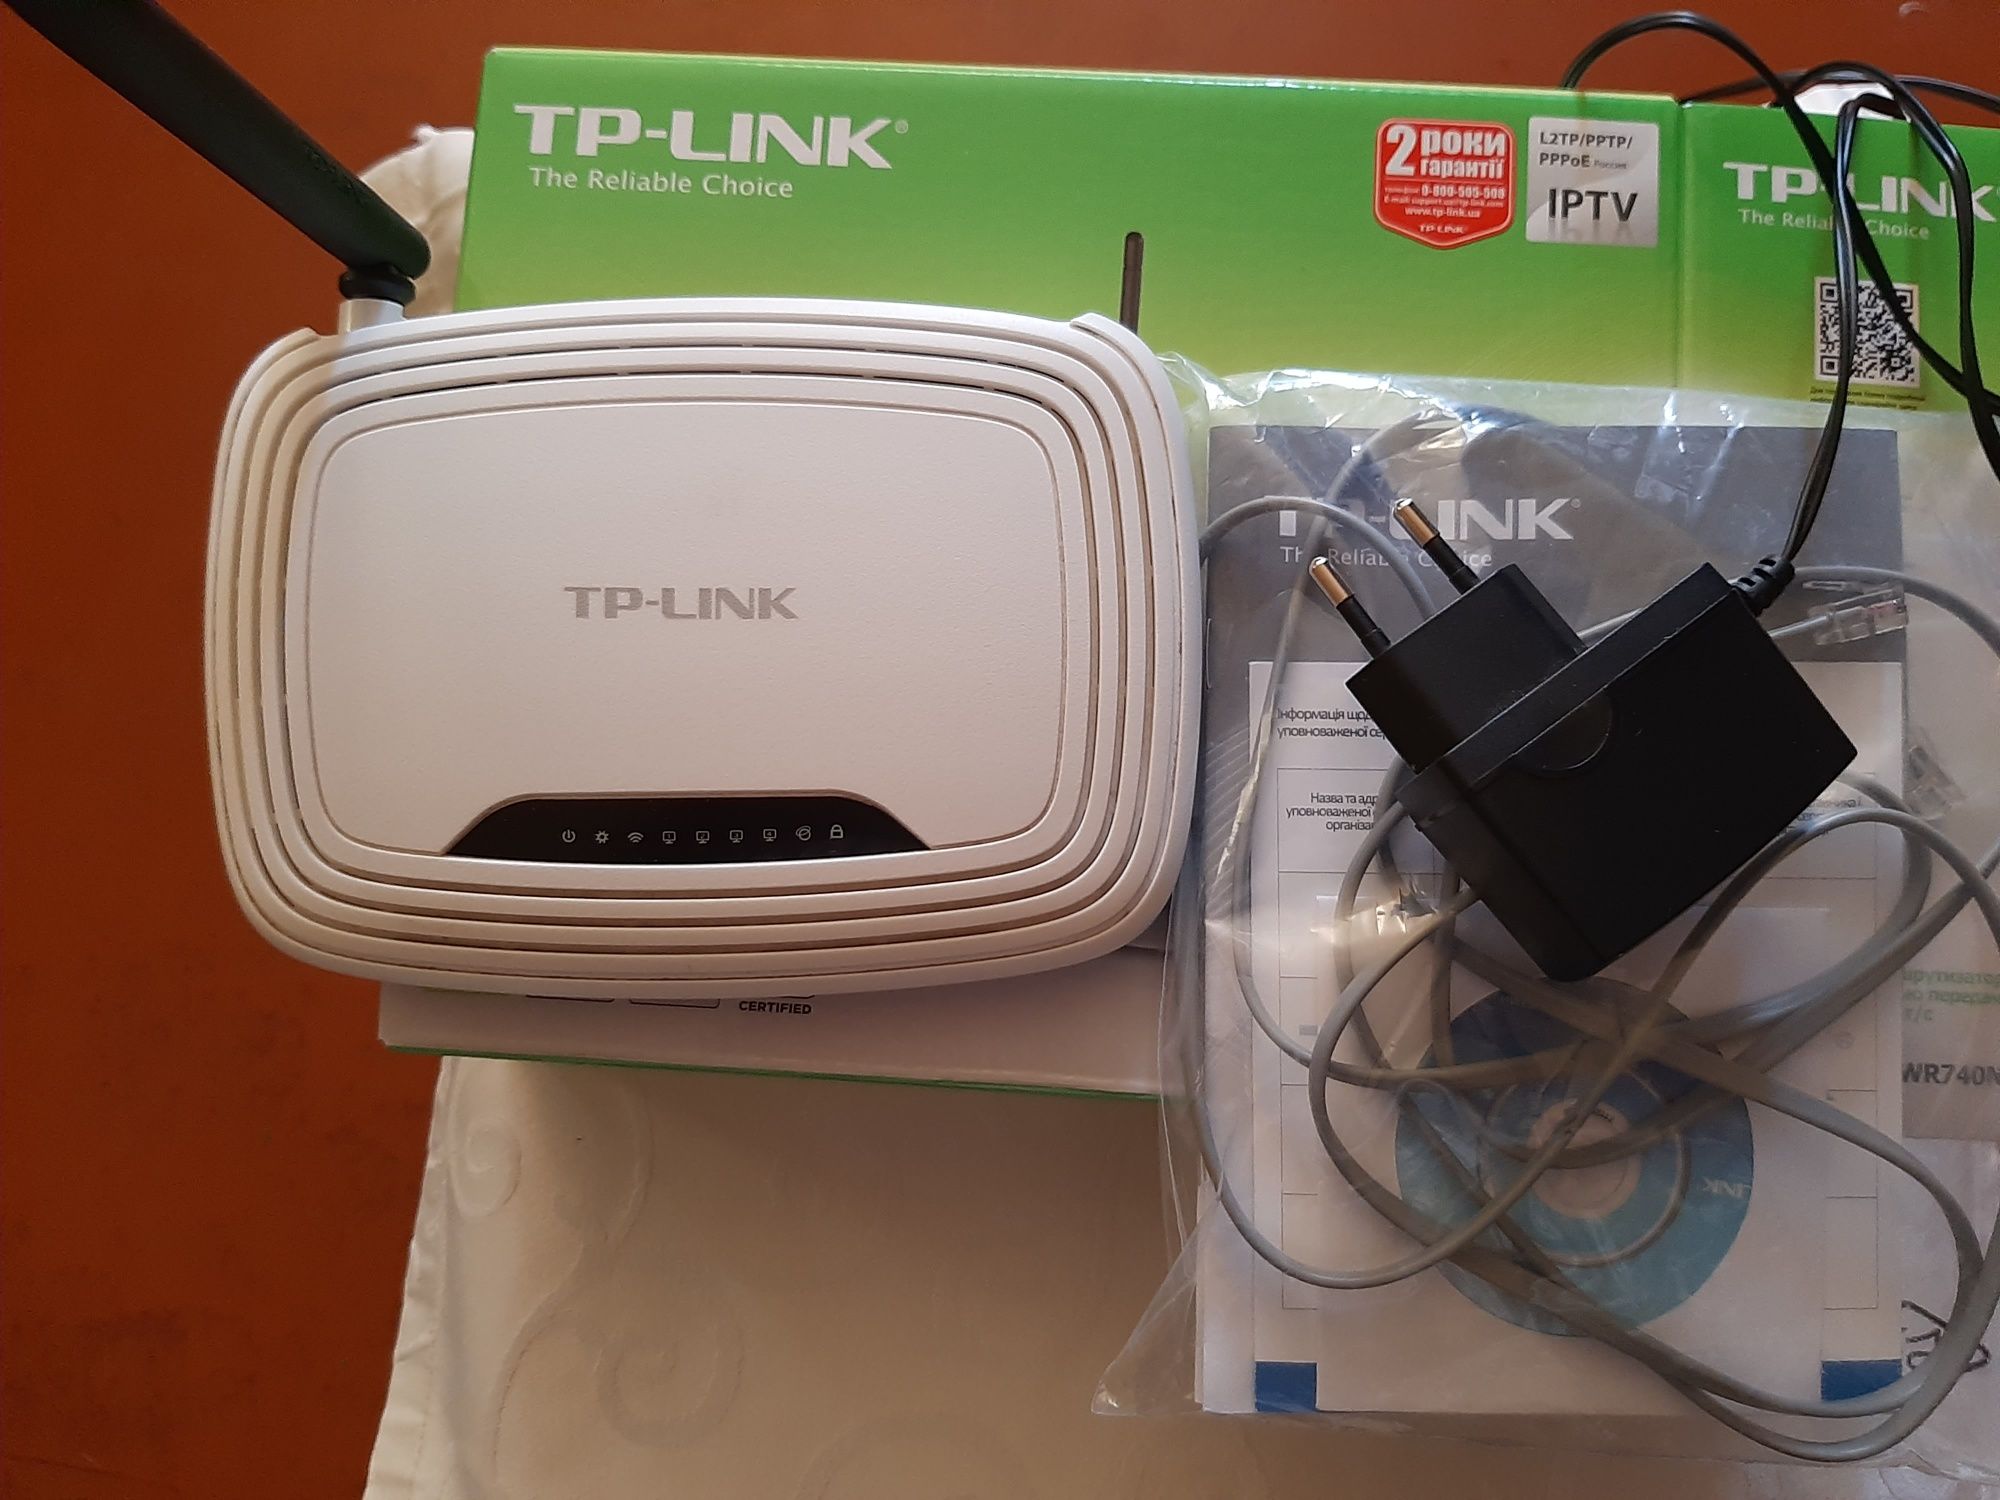 Продам роутер б/у TP-LINK модель TL-WR740N  рабочий в хорошем состояни